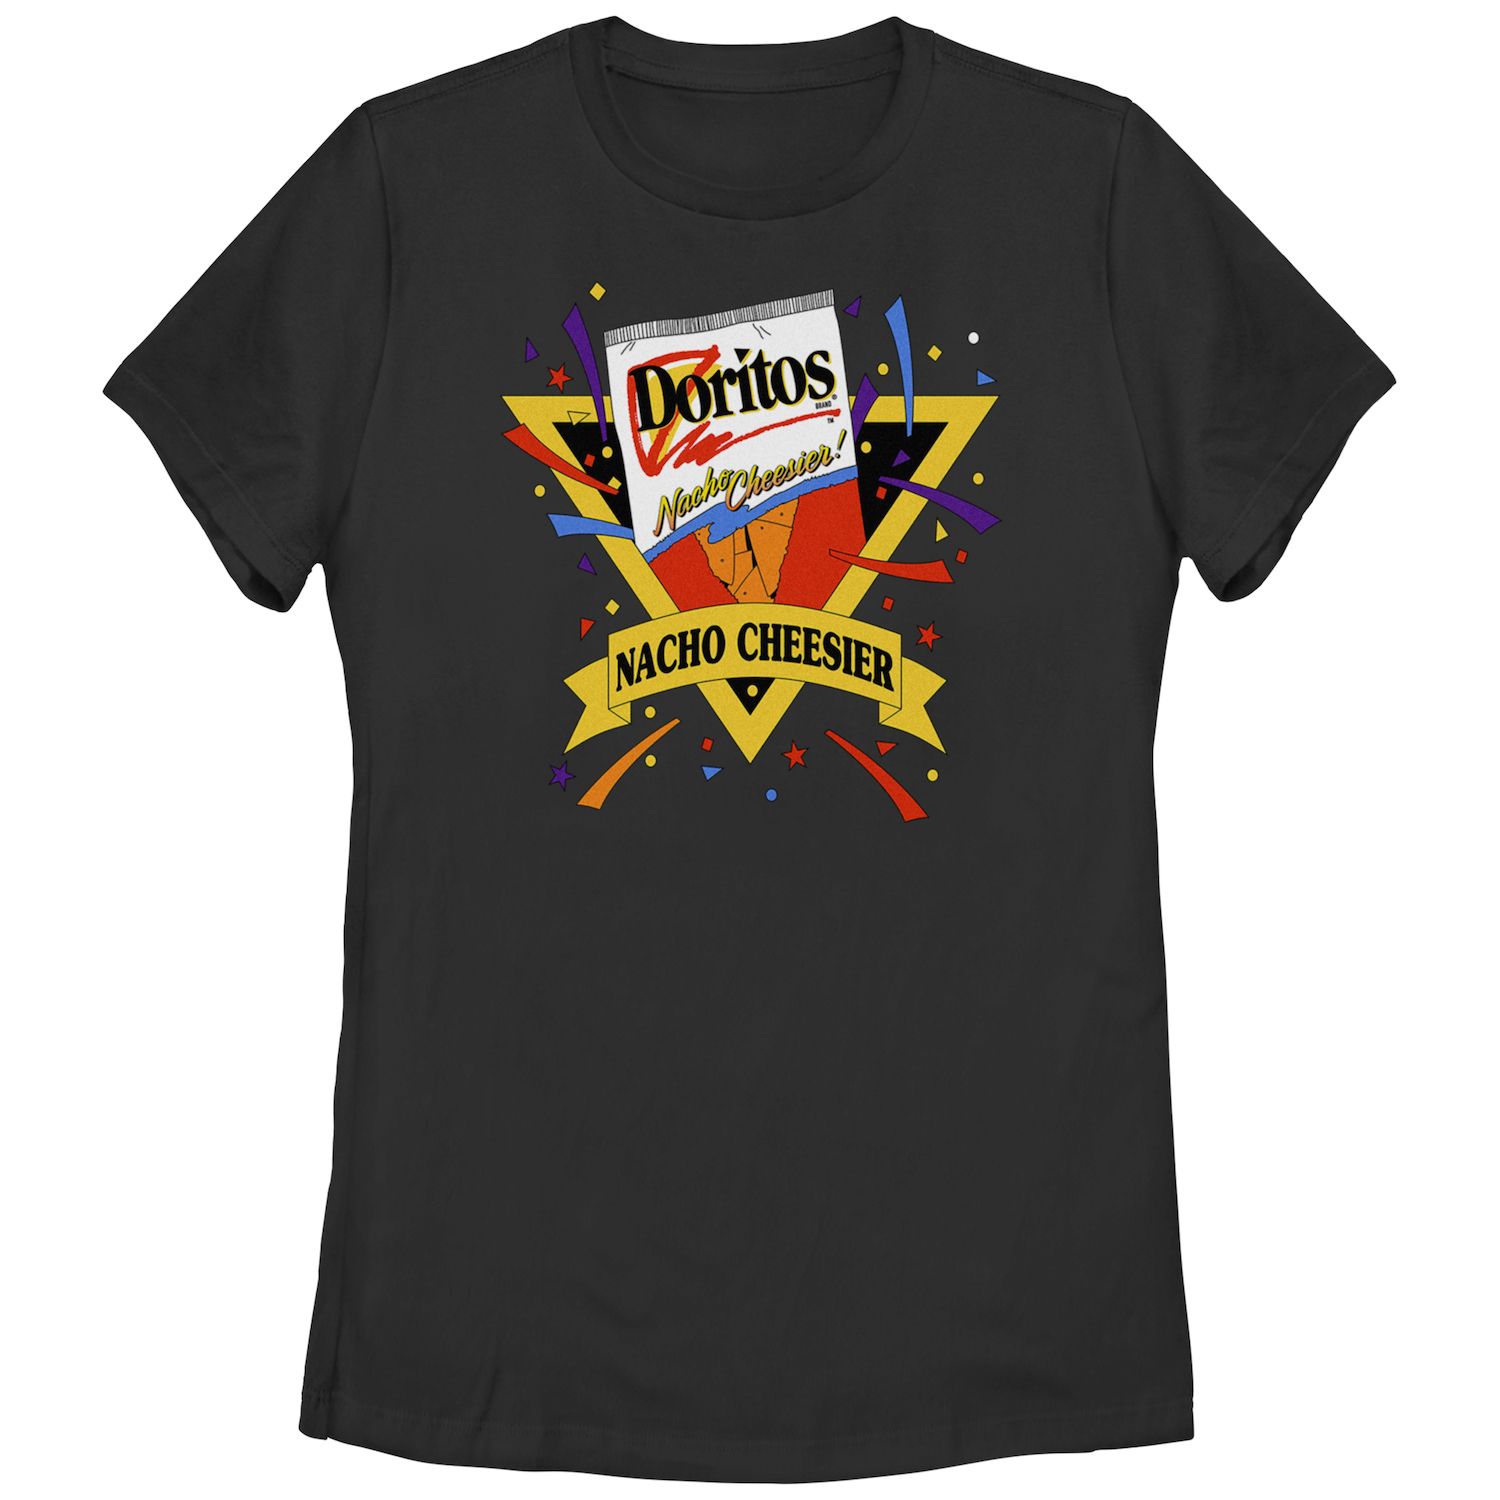 Детская футболка Doritos Nacho Cheesier с винтажным графическим логотипом Doritos детская футболка больших размеров doritos sunset в стиле 80 х с v образным вырезом и графикой doritos